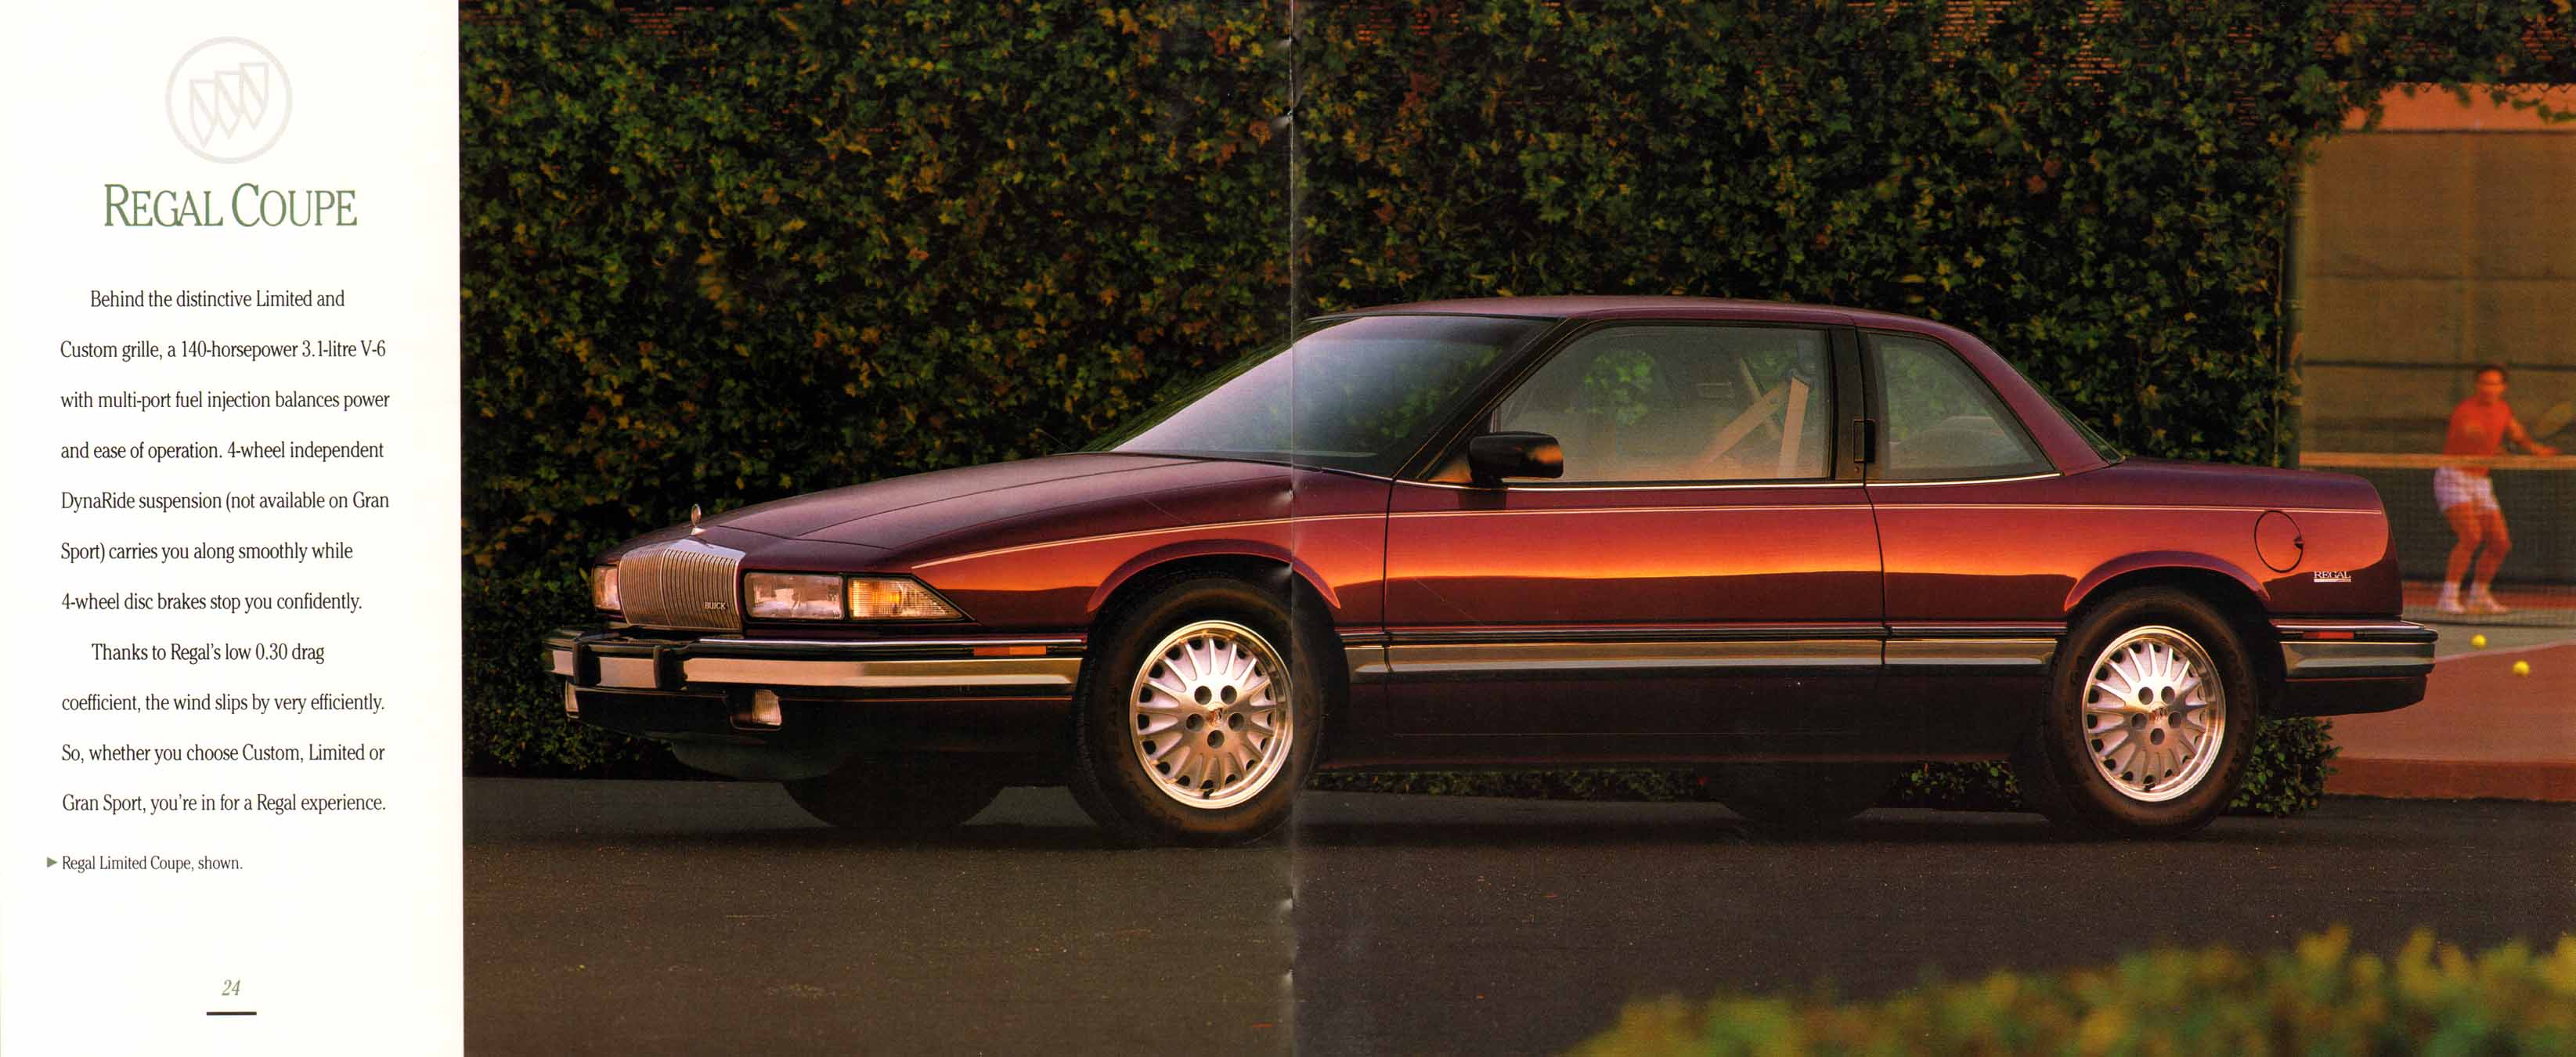 1992 Buick Full Line Prestige-24-25